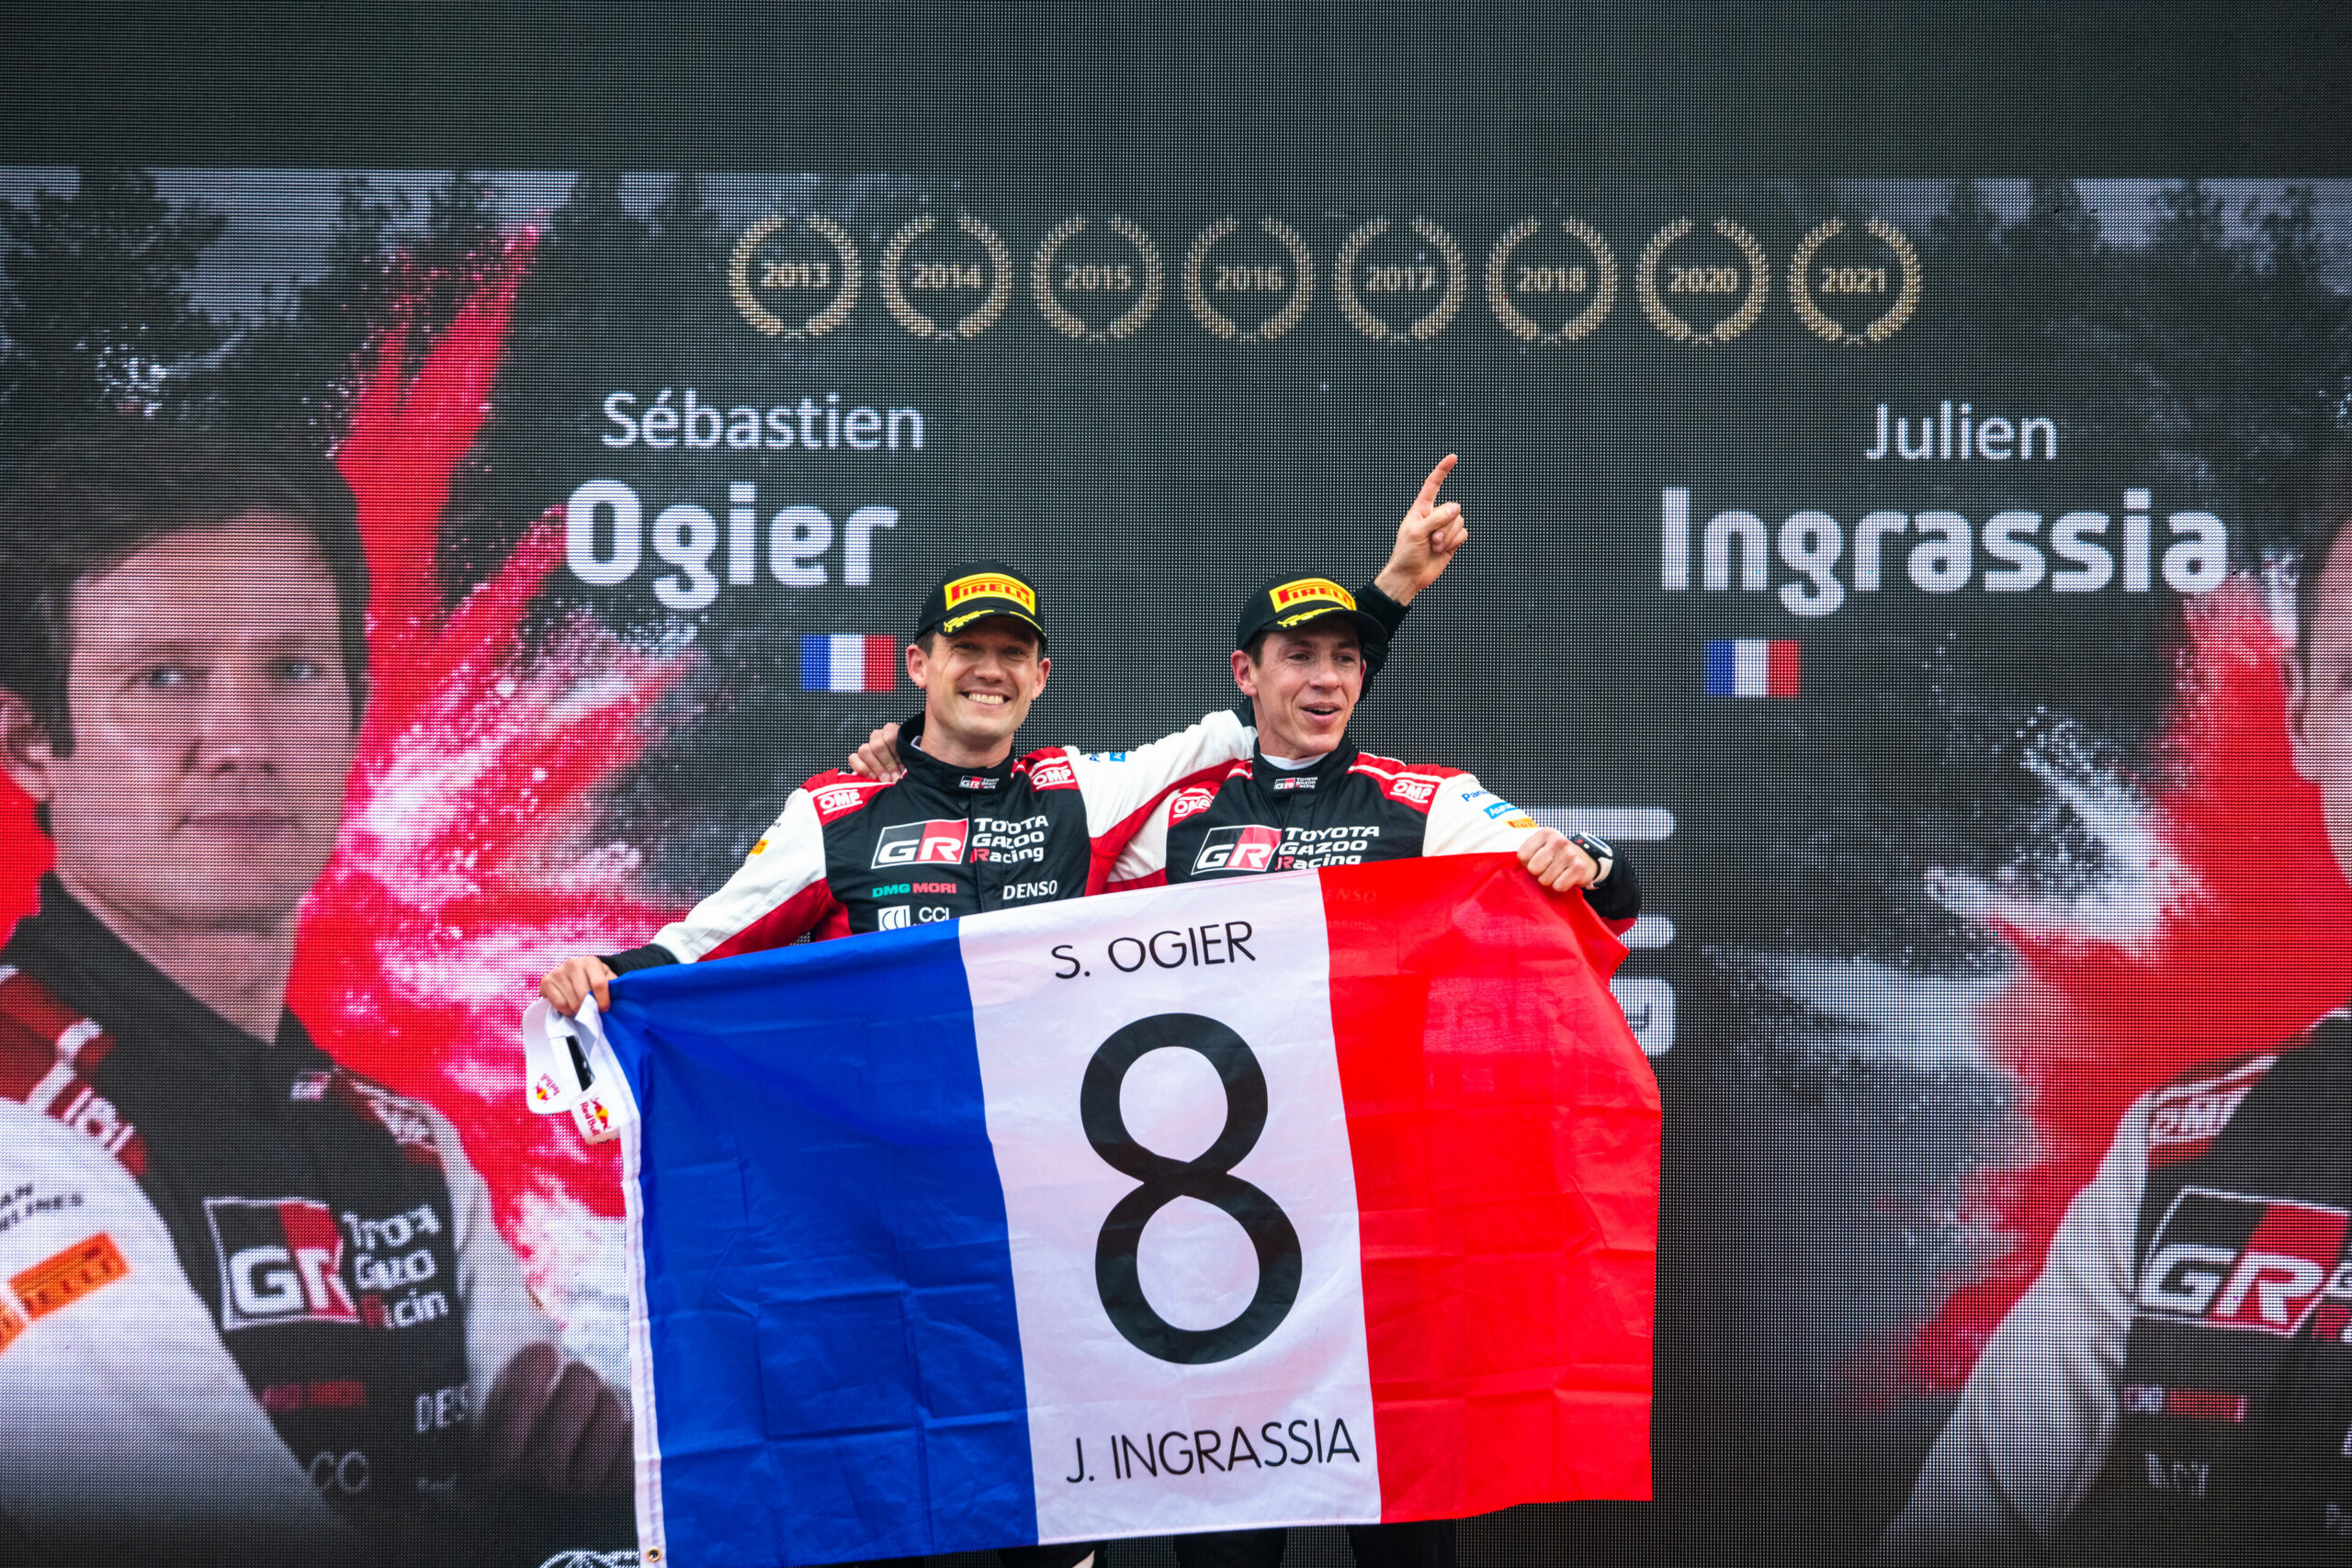 Lire la suite à propos de l’article Sébastien Ogier marque son retour en WRC au Portugal avec un nouveau film !